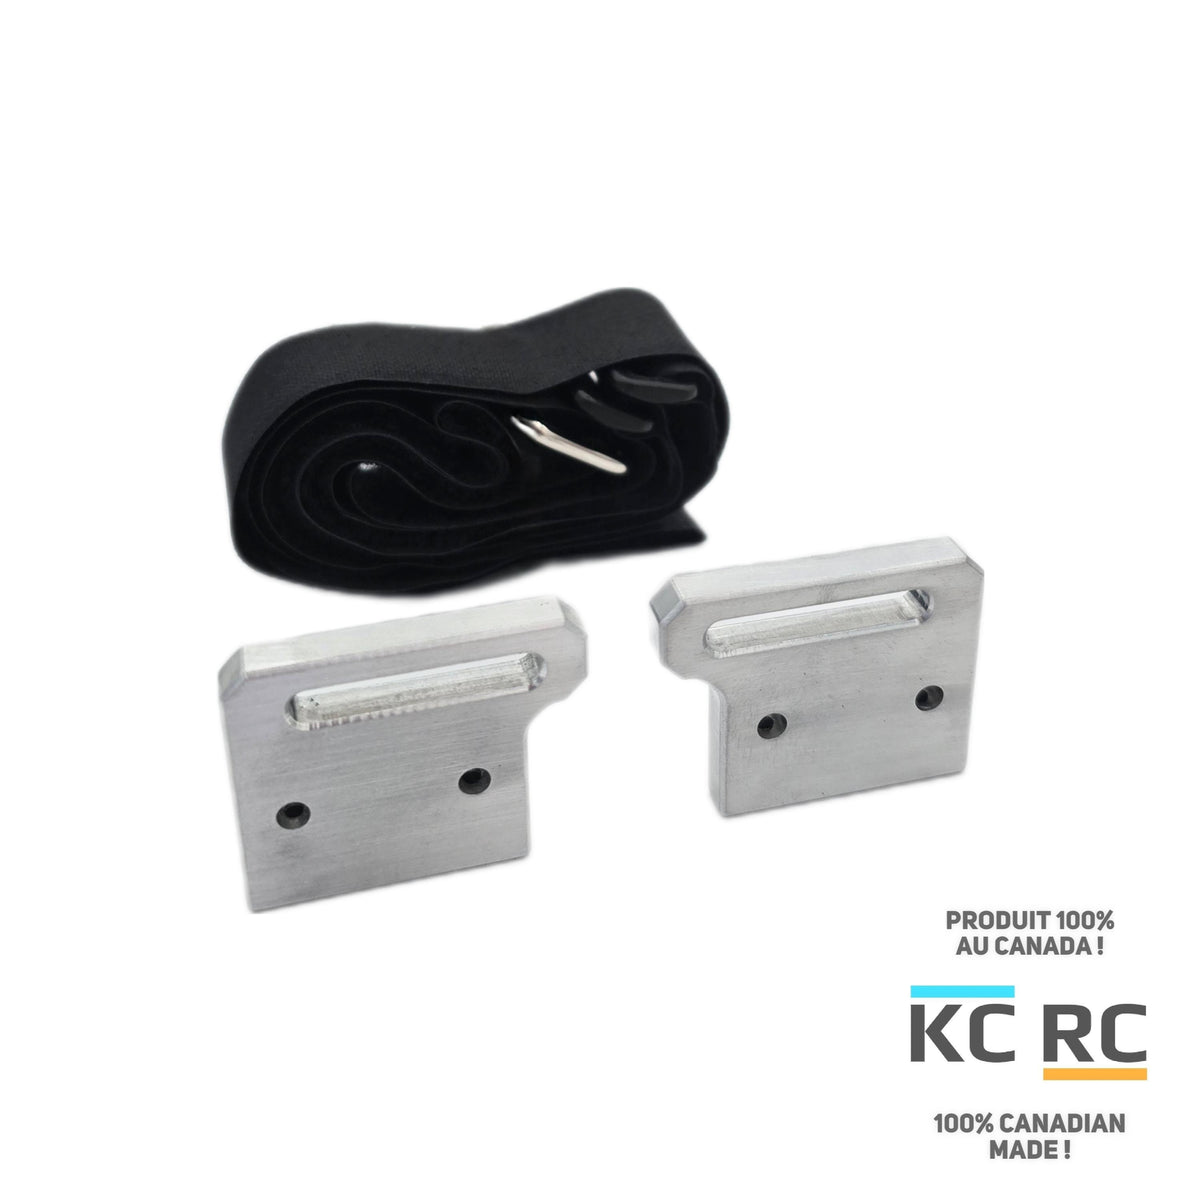 KC RC Velcro batteries holder for Traxxas Sledge 6s, Maxx Slash 6s